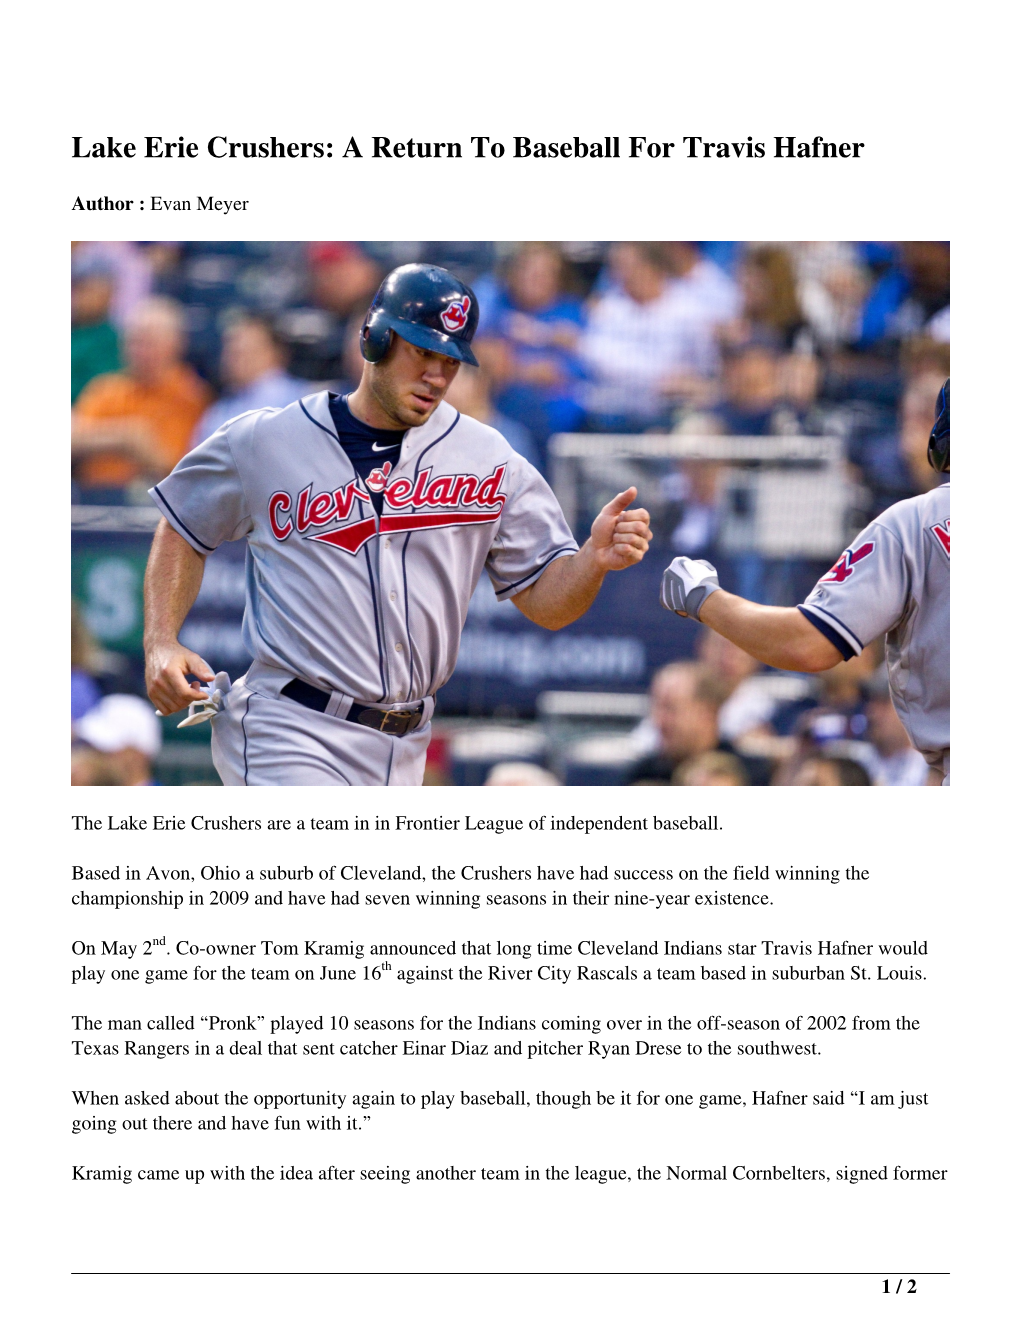 Lake Erie Crushers: a Return to Baseball for Travis Hafner